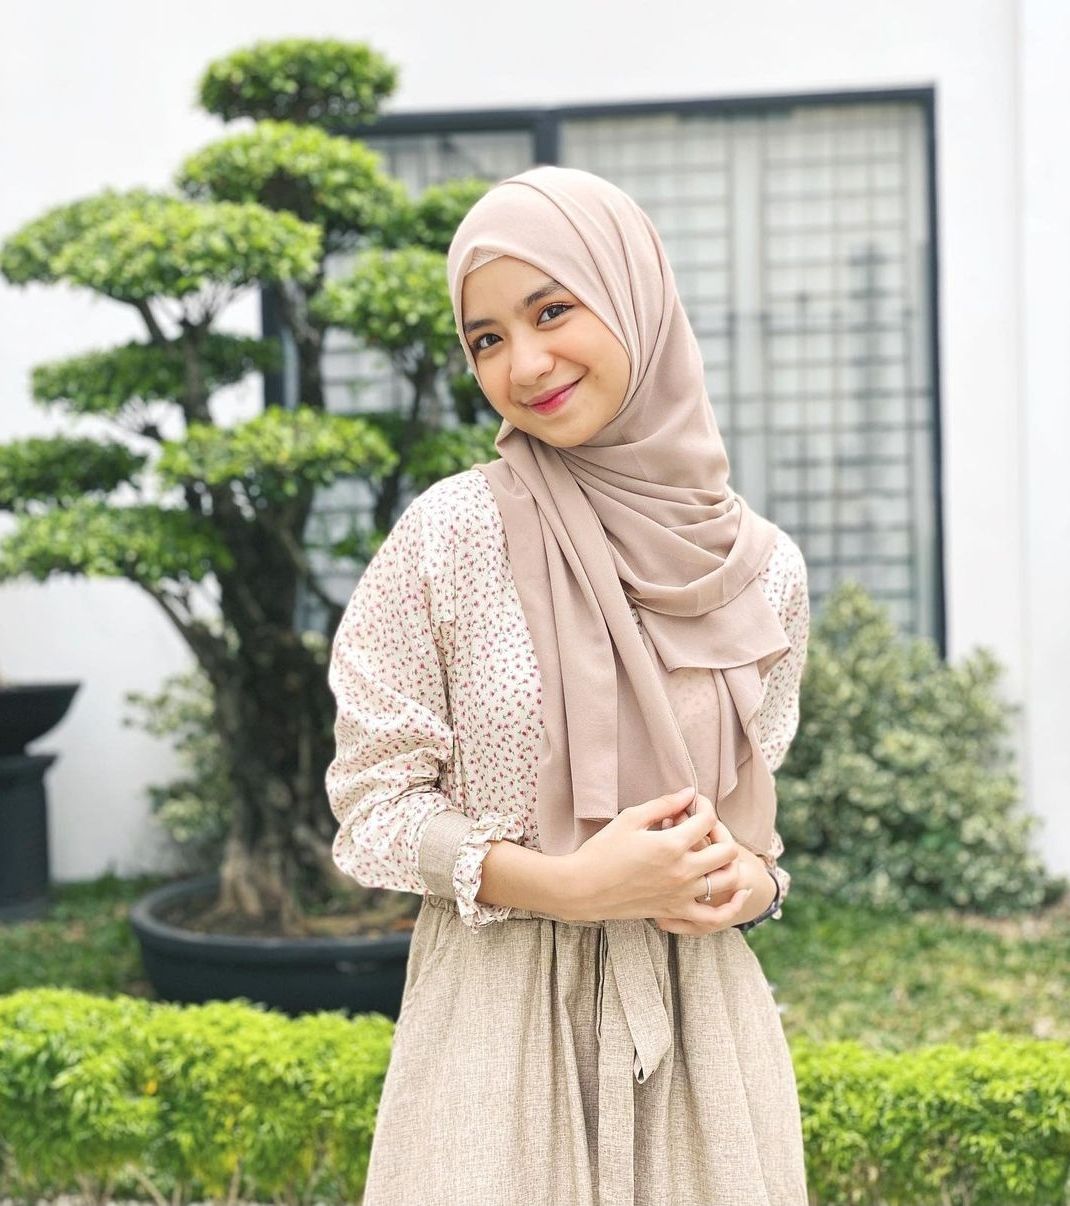 Profil Dan Biodata Nashwa Zahira Indonesian Idol Junior Lengkap Ada Tinggi Badan Dan Akun Instagram Portal Kudus